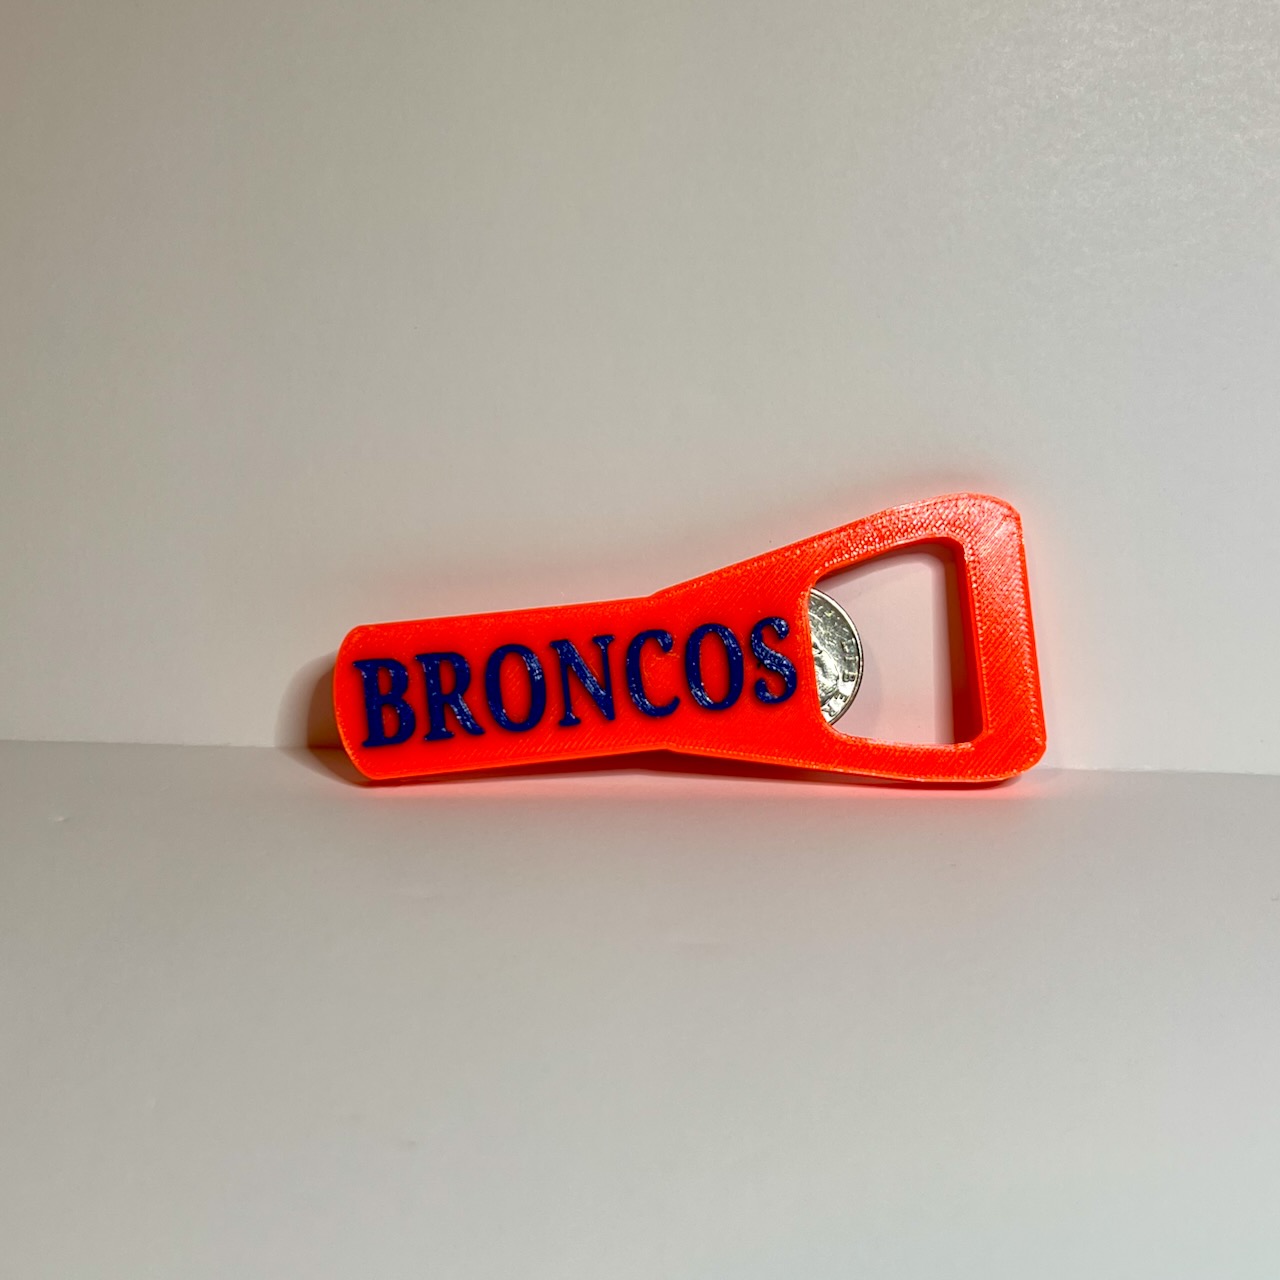 Denver Broncos bottle opener.